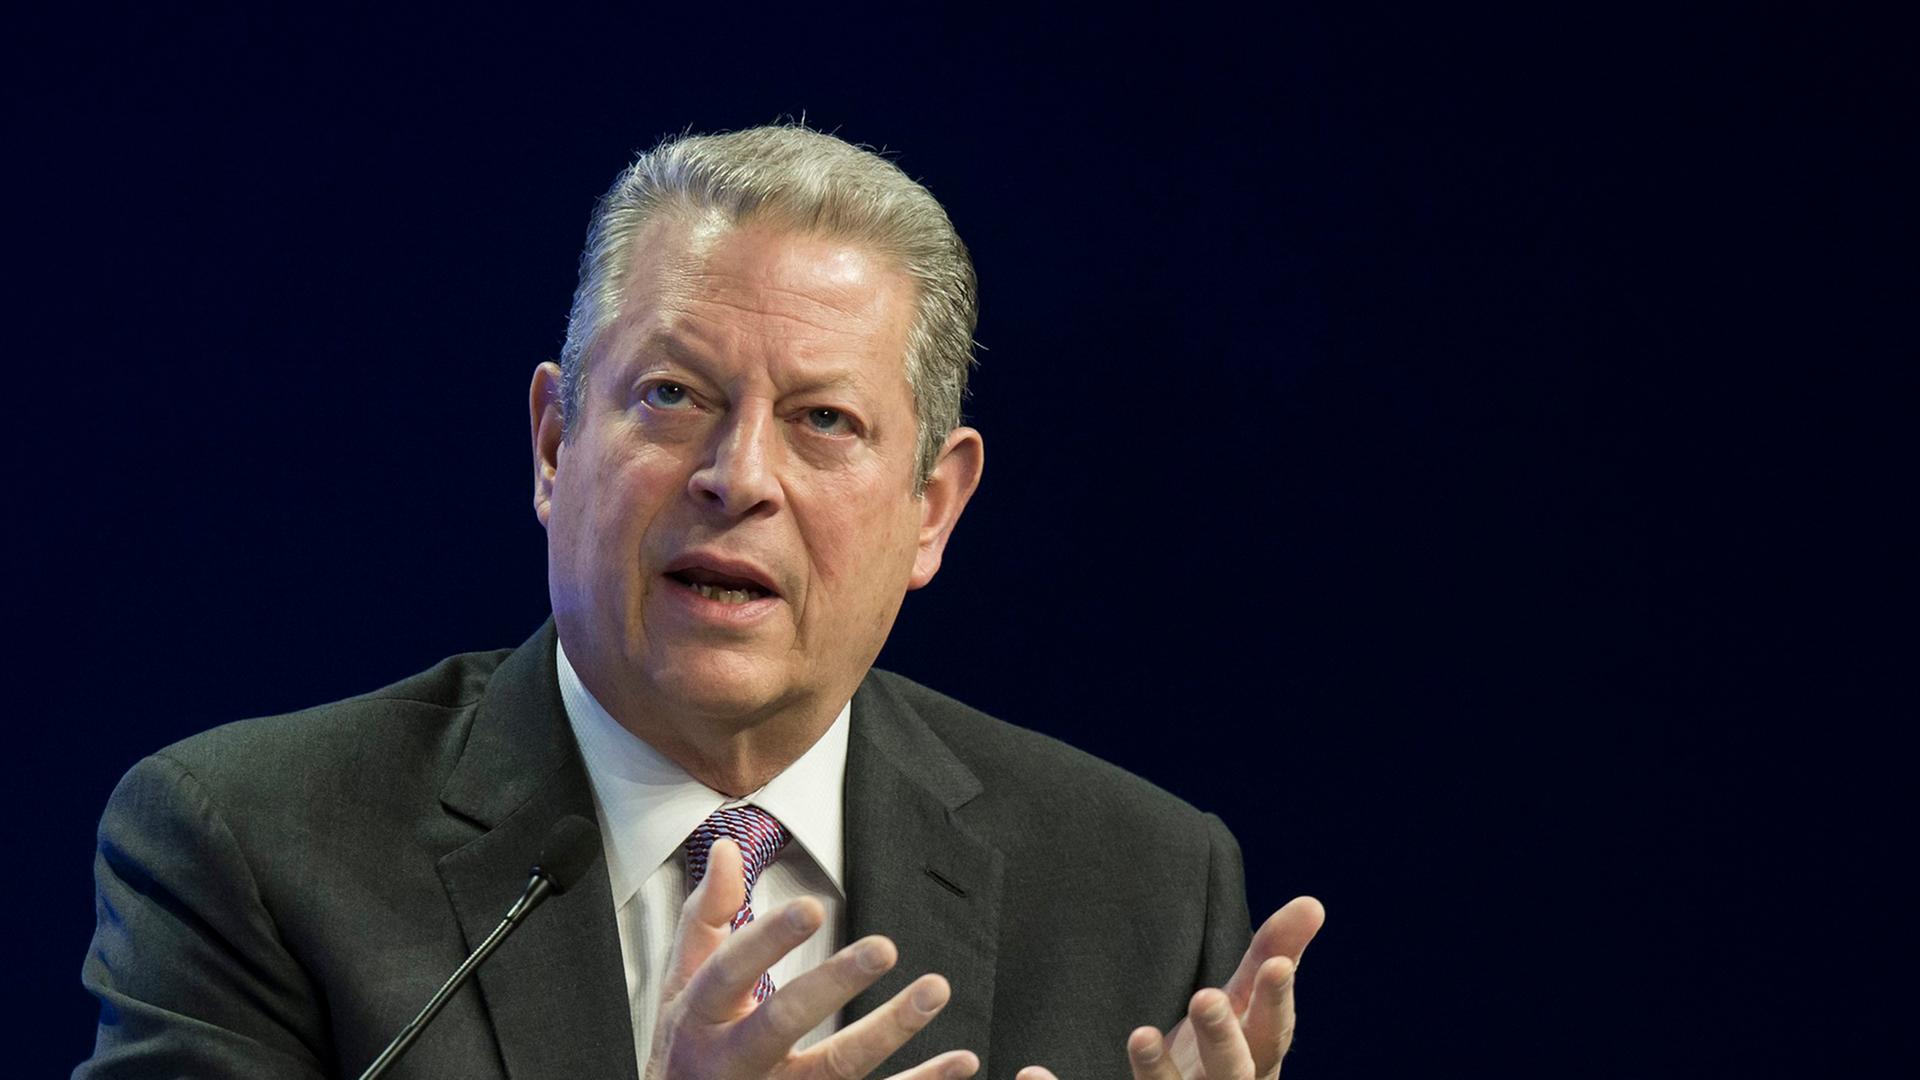 Der ehemalige Vizepräsident Al Gore bei einer Podiumsdiskussion in Davos